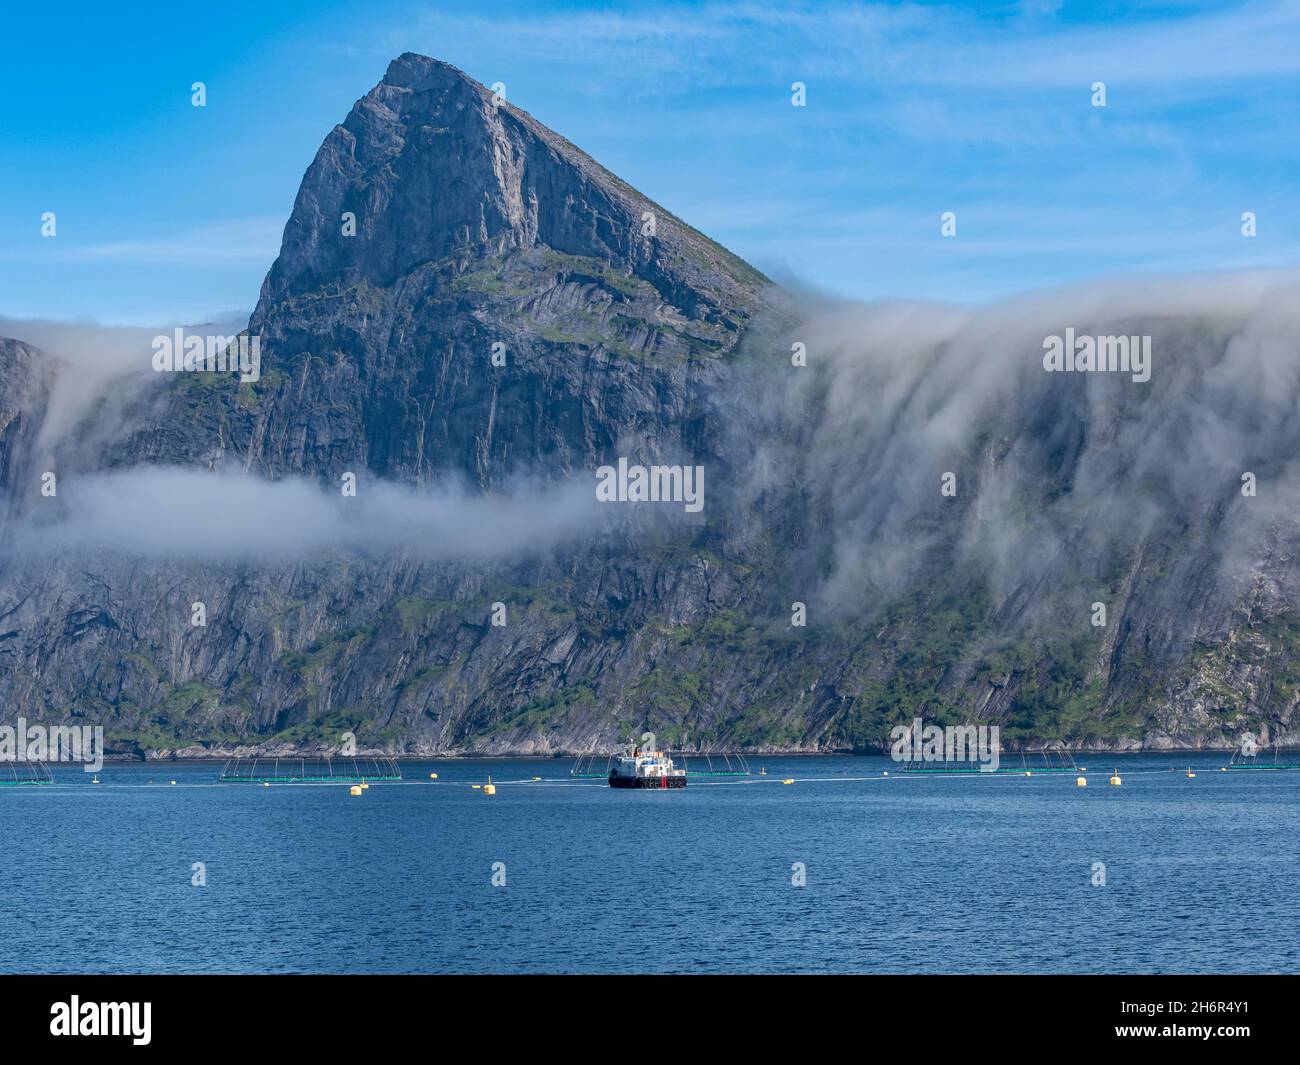 Lachsfarm, Aquakultur im Mefjord auf der Insel Senja, im Hintergrund der Gipfel des berühmten Segla-Berges, Norwegen Stockfoto